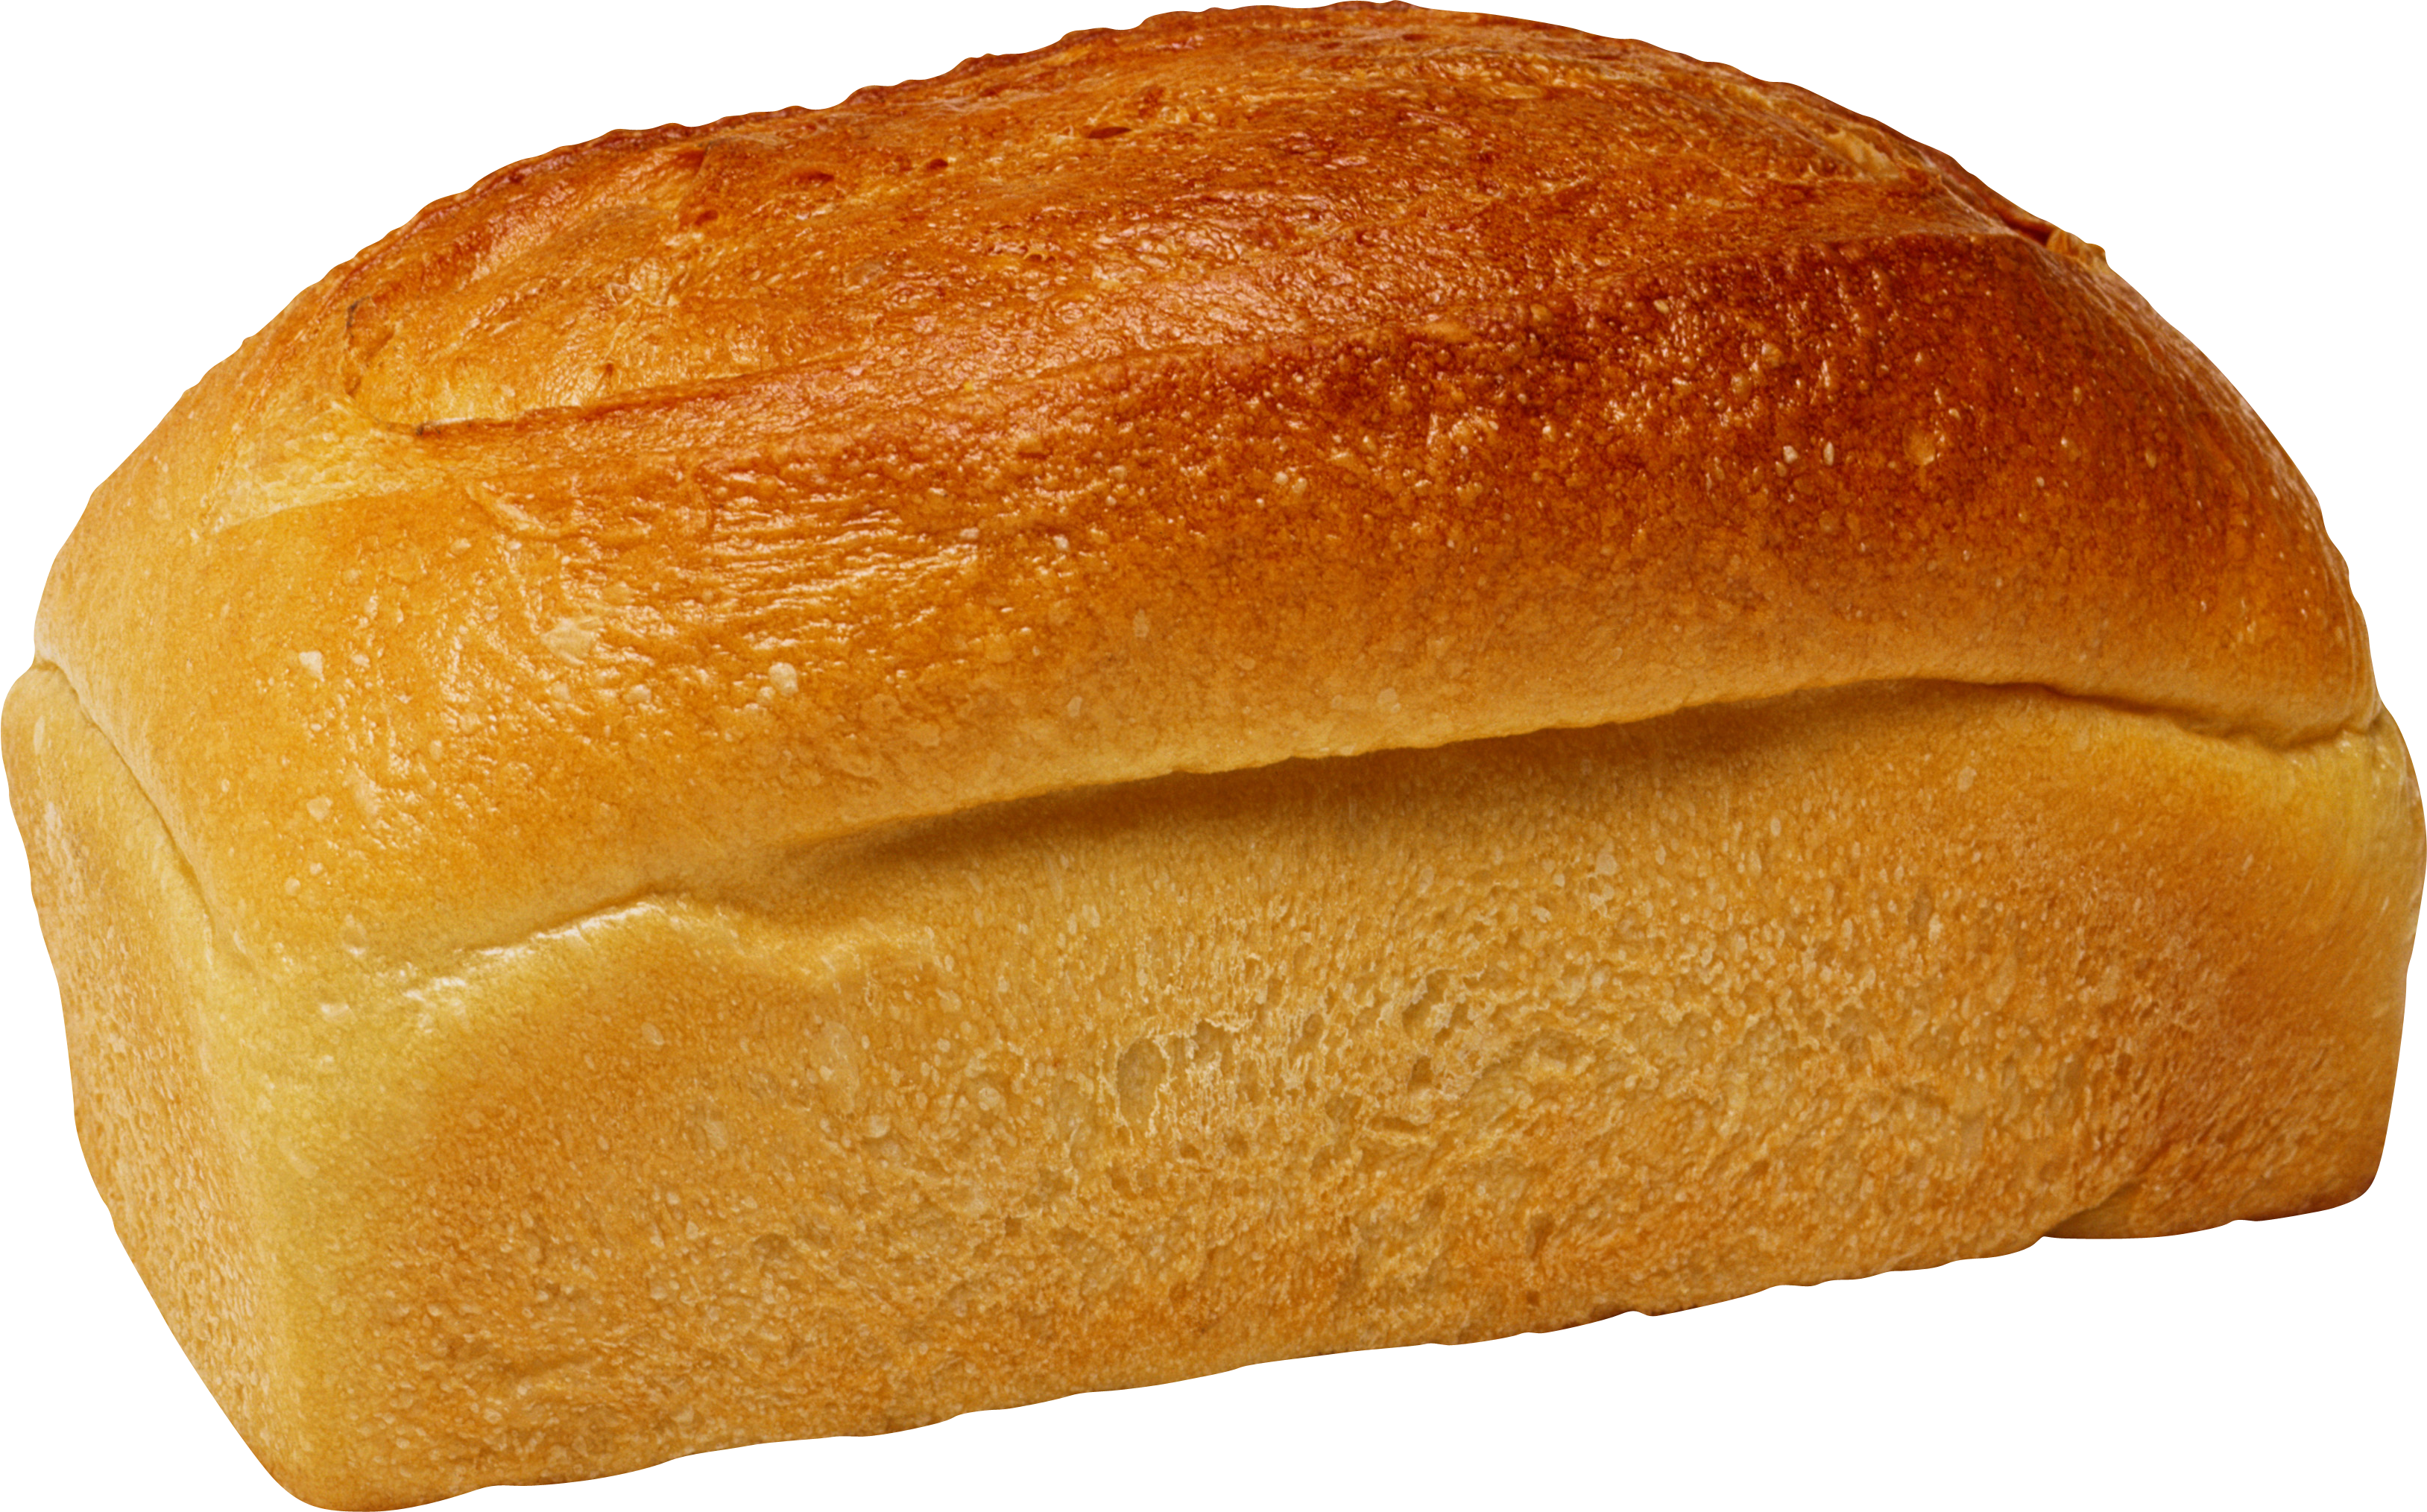 Sliced Loaf of Bread